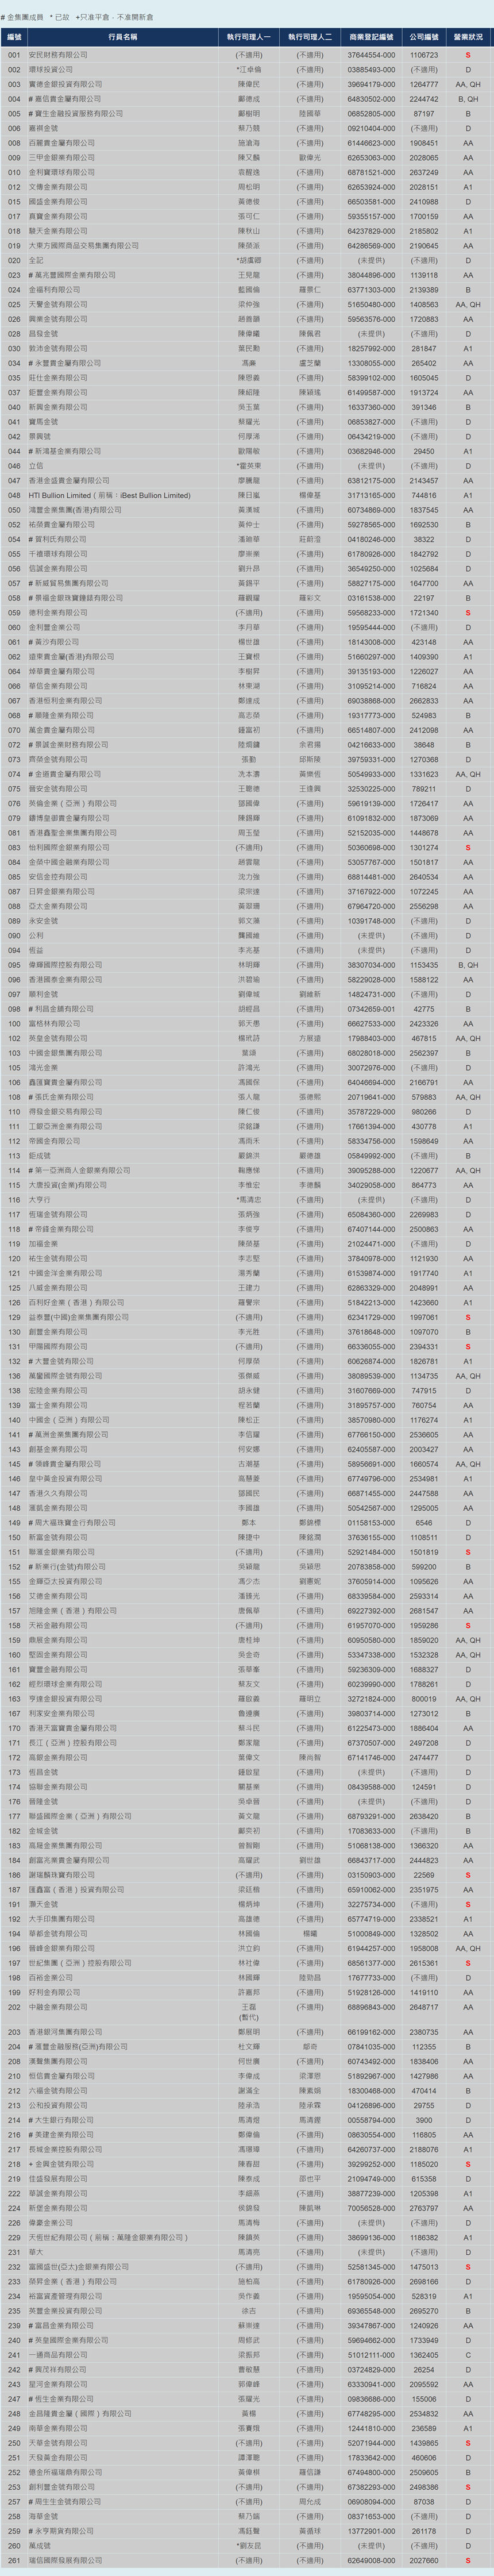 香港金银业贸易场行员名单